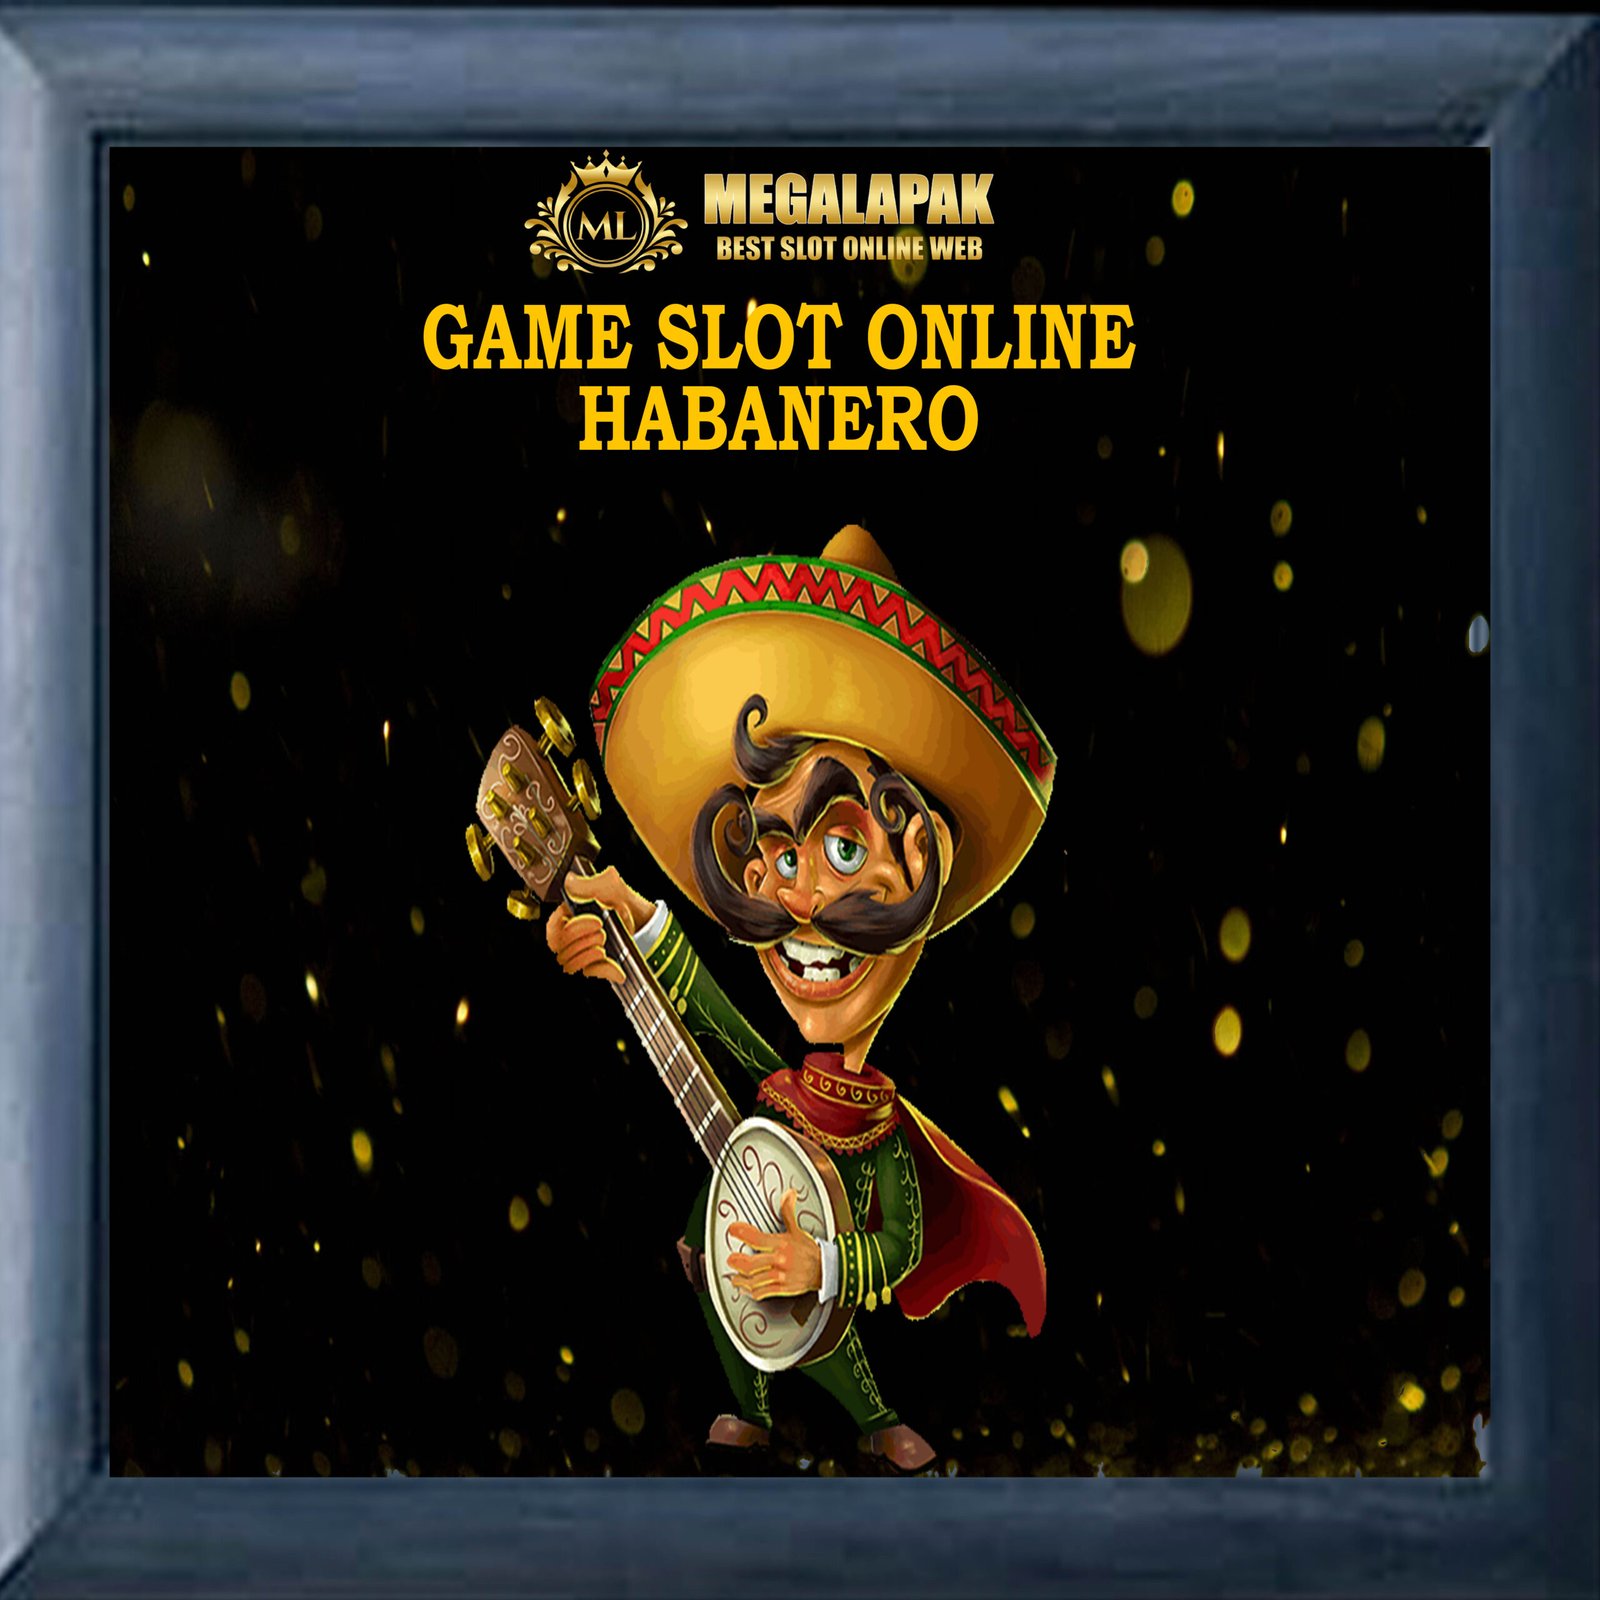 Slot Online Habanero Megalapak